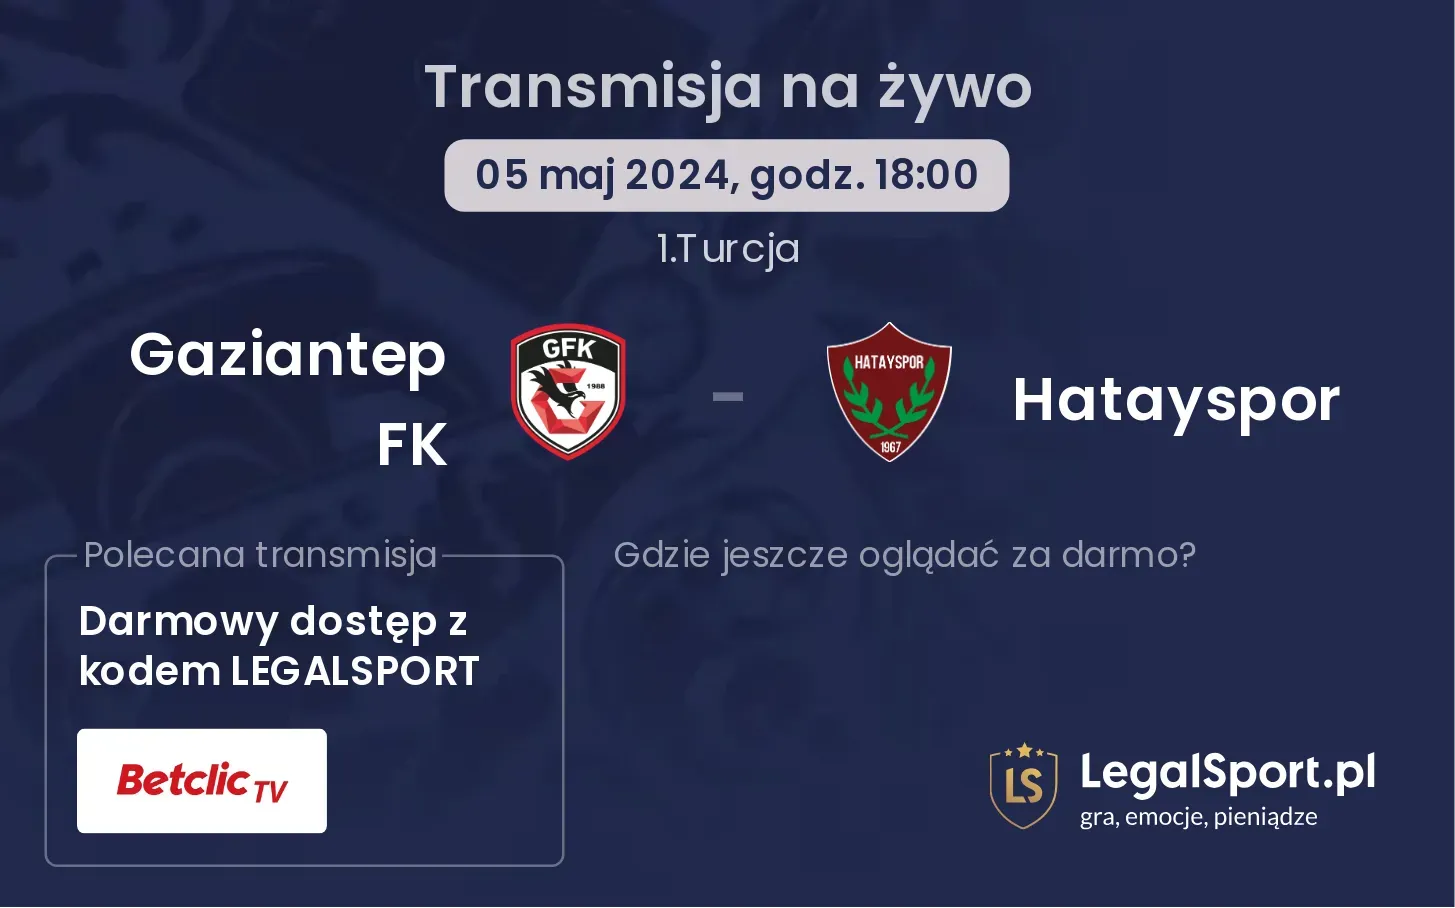 Gaziantep FK - Hatayspor transmisja na żywo